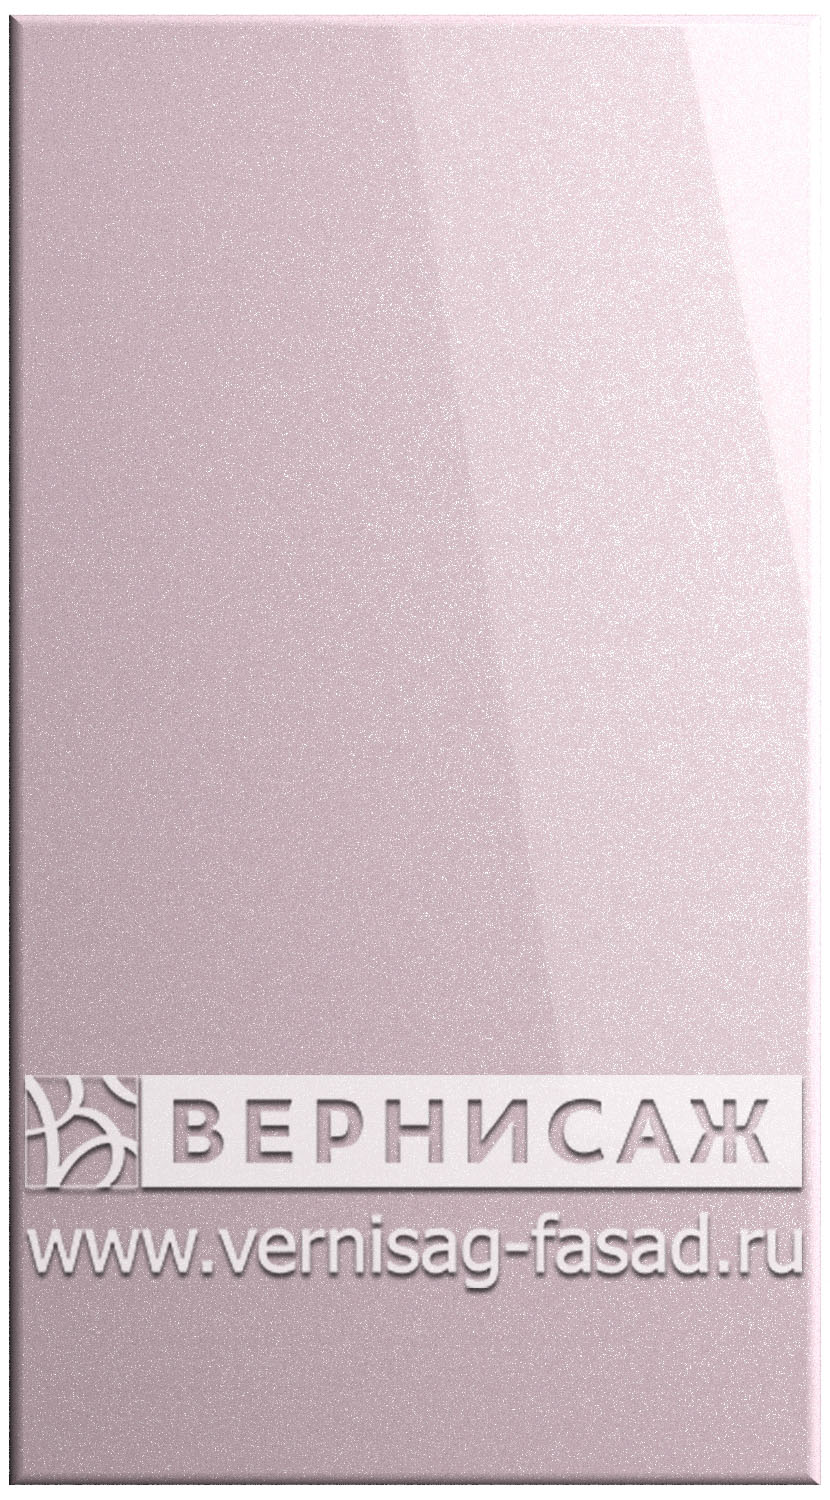 Фасады в пленке ПВХ, Фрезеровка № 15, цвет Пастель фиолет металлик